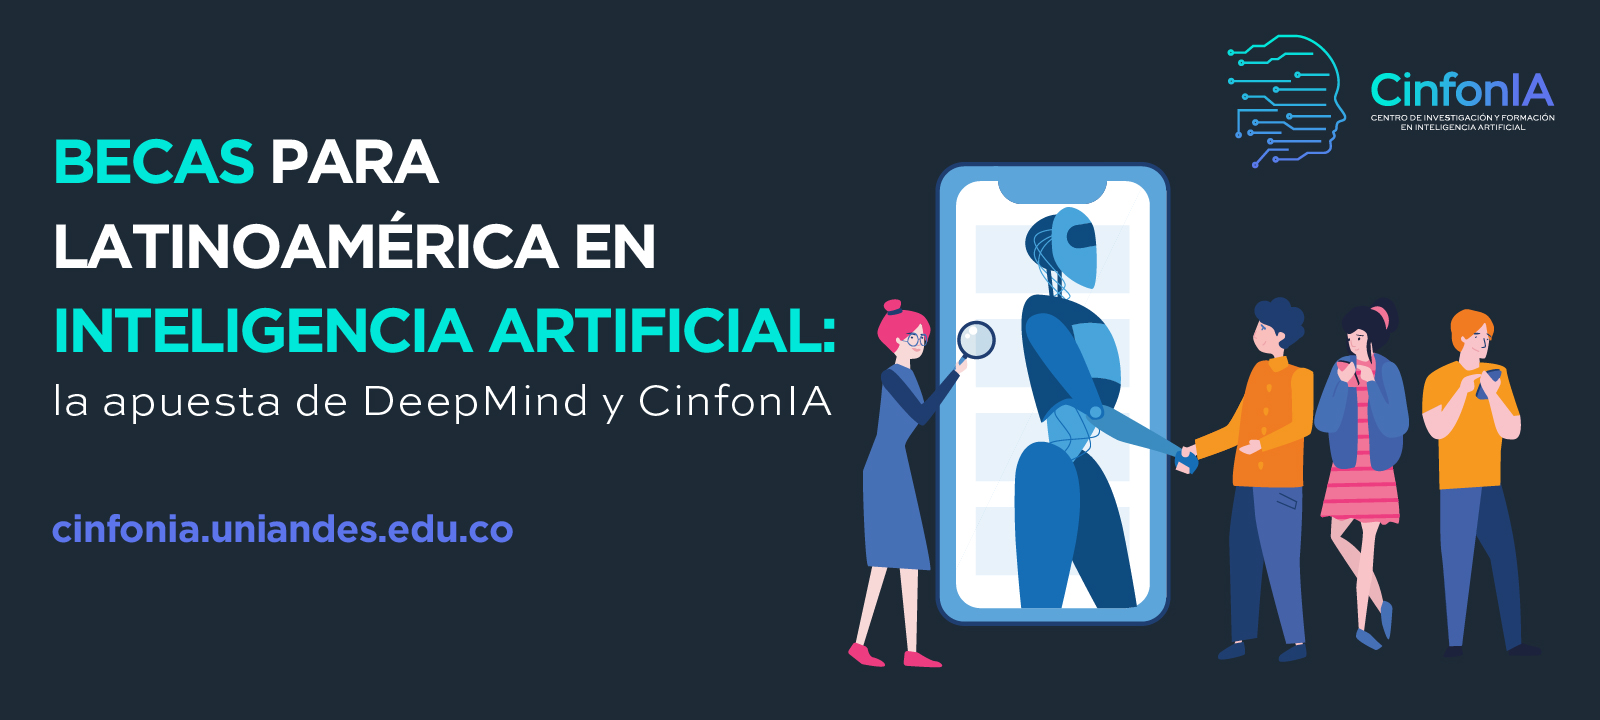 Becas para Latinoamérica en inteligencia artificial: la apuesta de DeepMind y CinfonIA